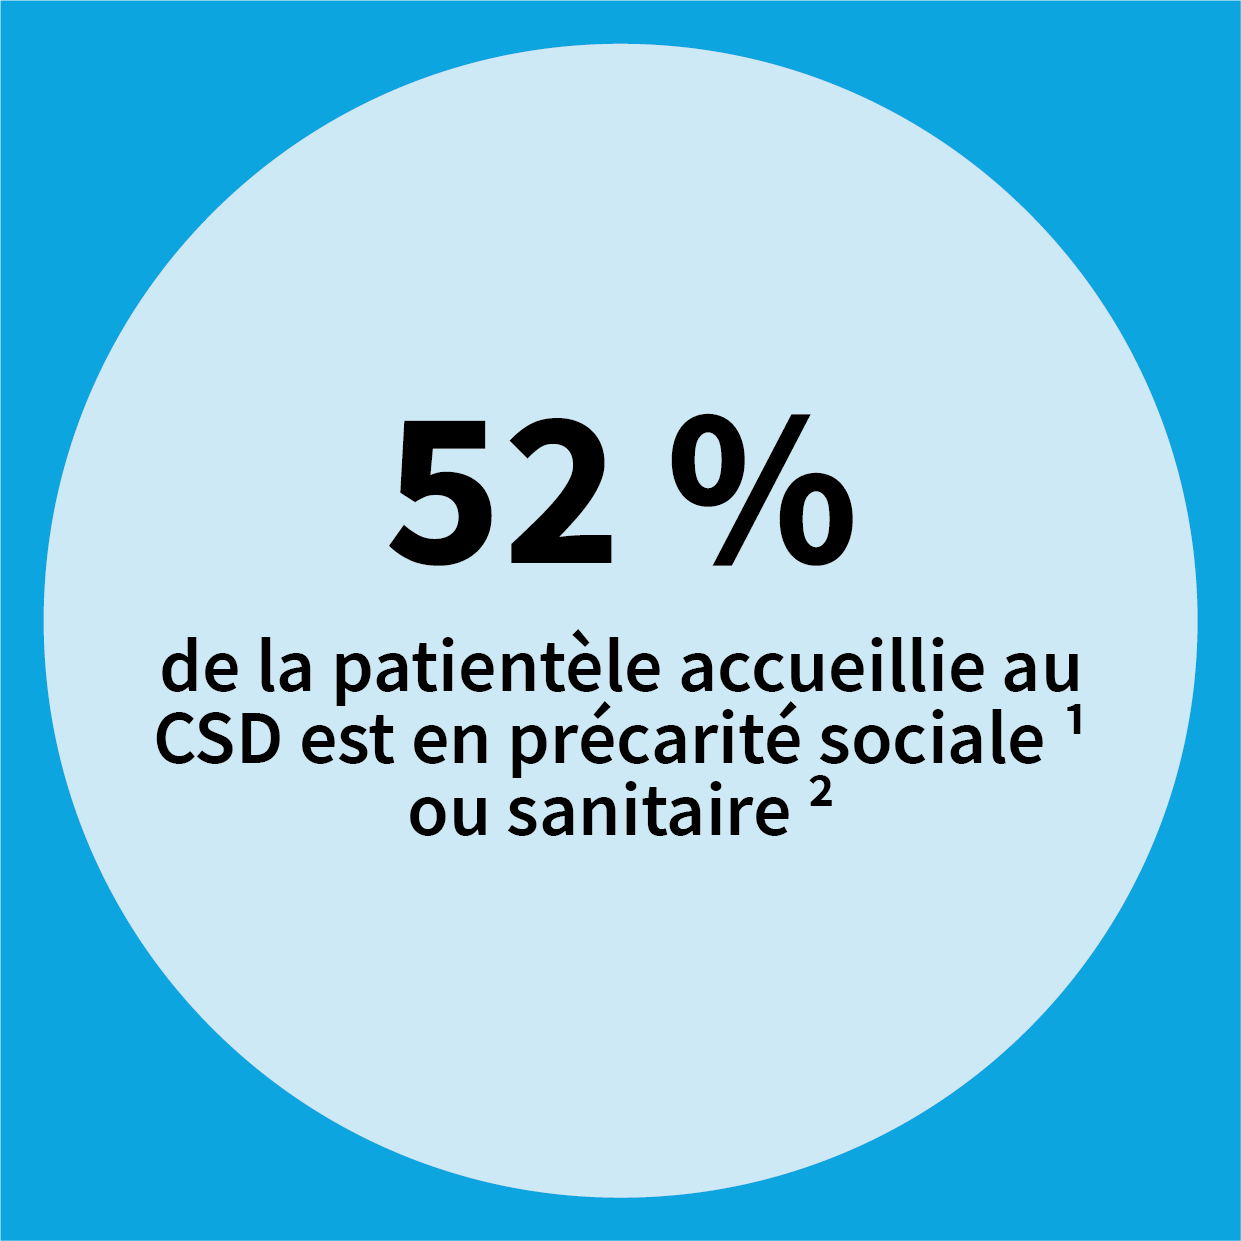 52% de la patientèle accueillie au CSD est en précarité (1) sociale ou sanitaire (2)